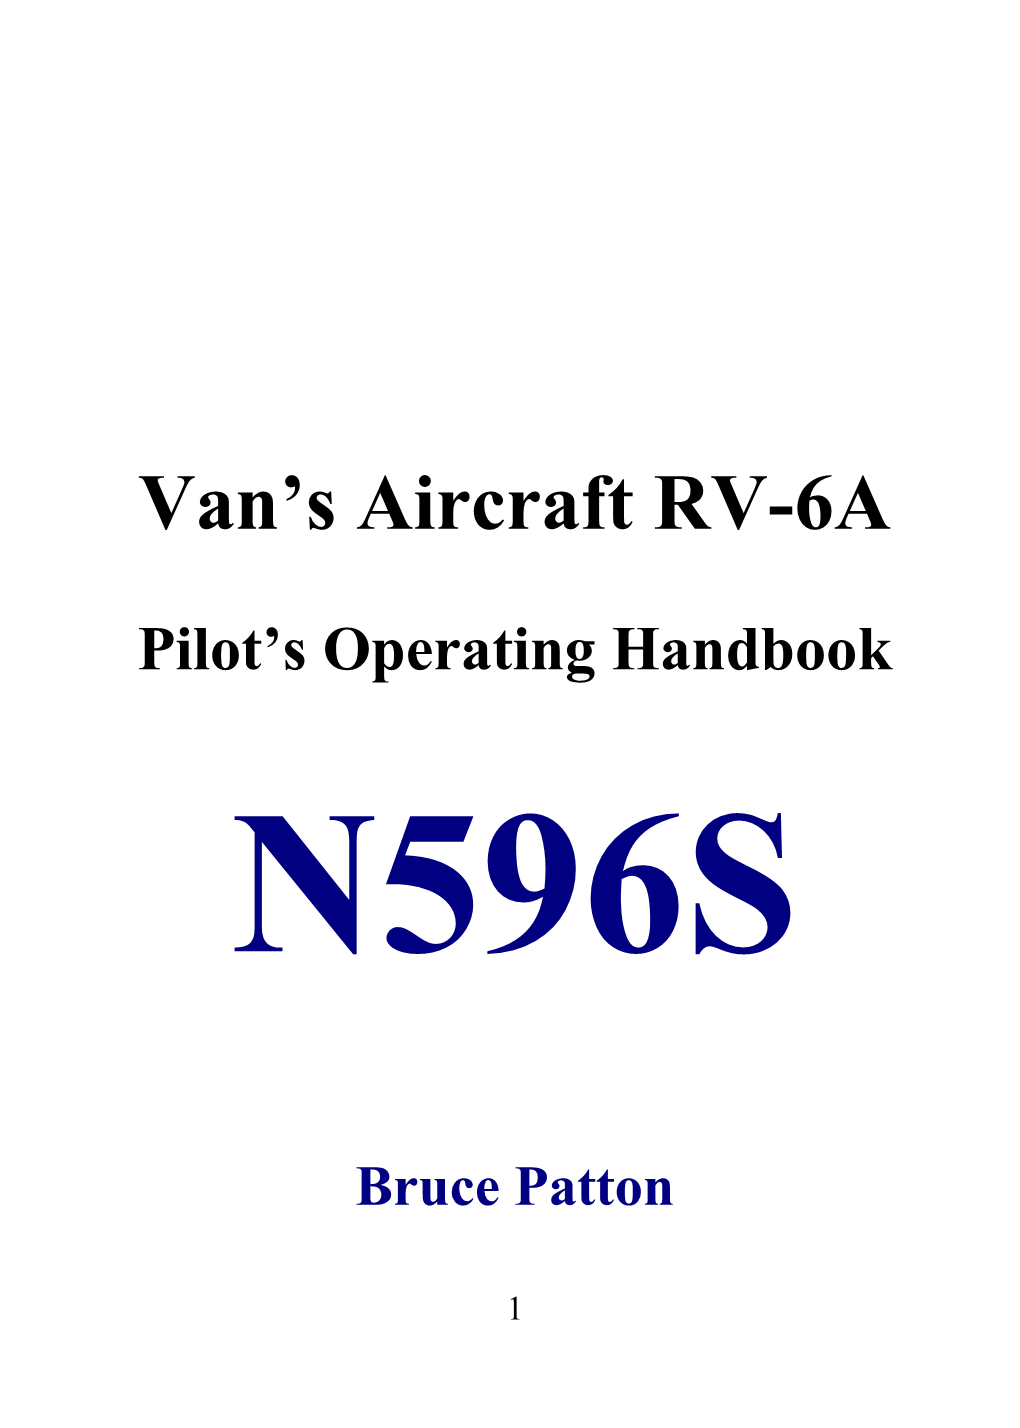 Van S Aircraft RV-6A